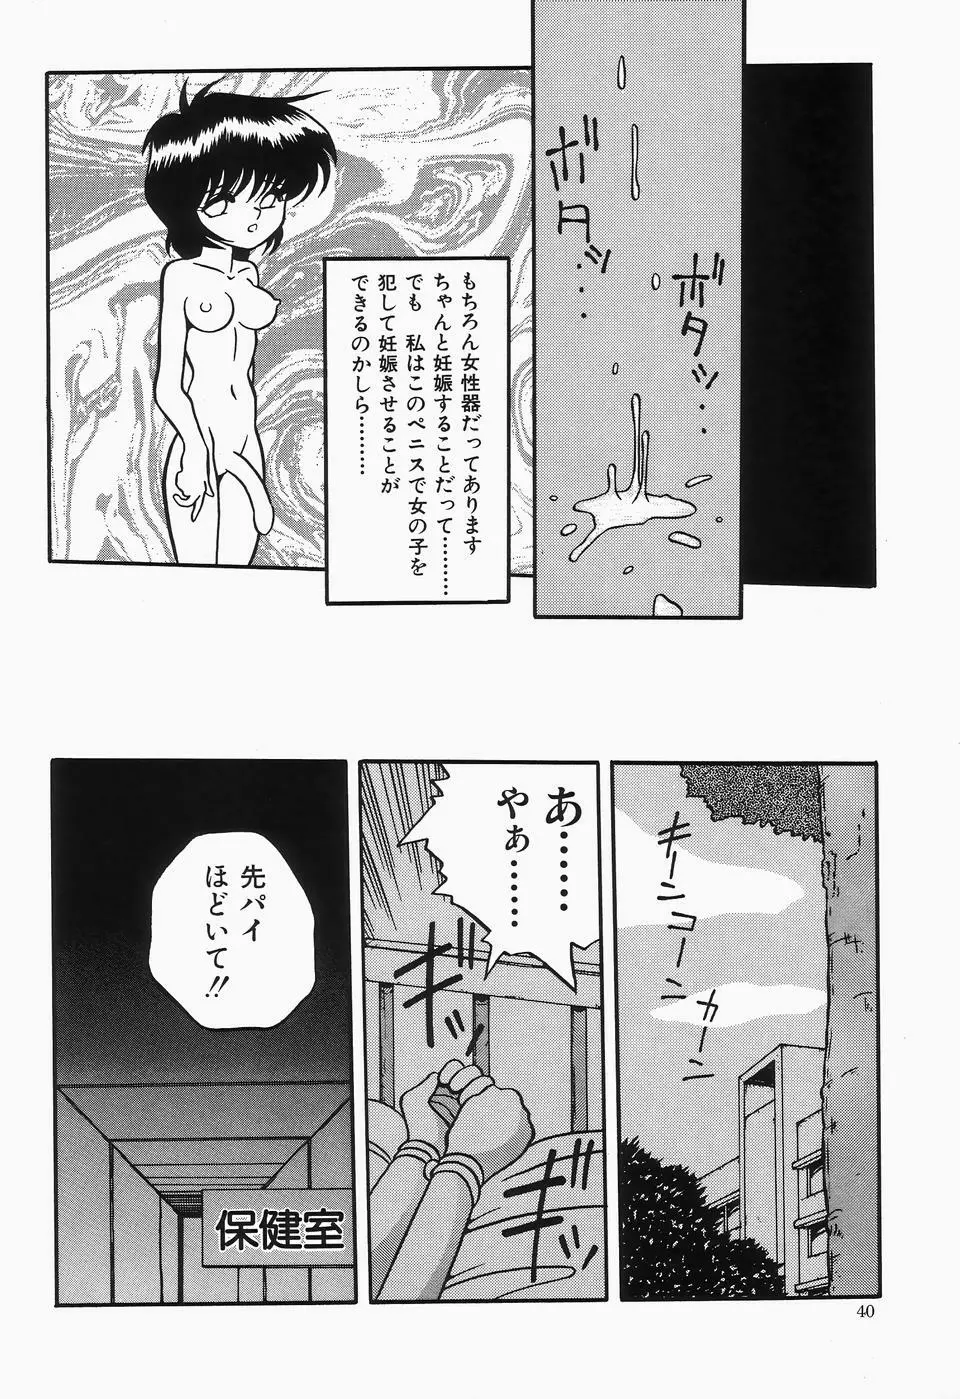 チェリームーンSUPER！ Vol.1 42ページ